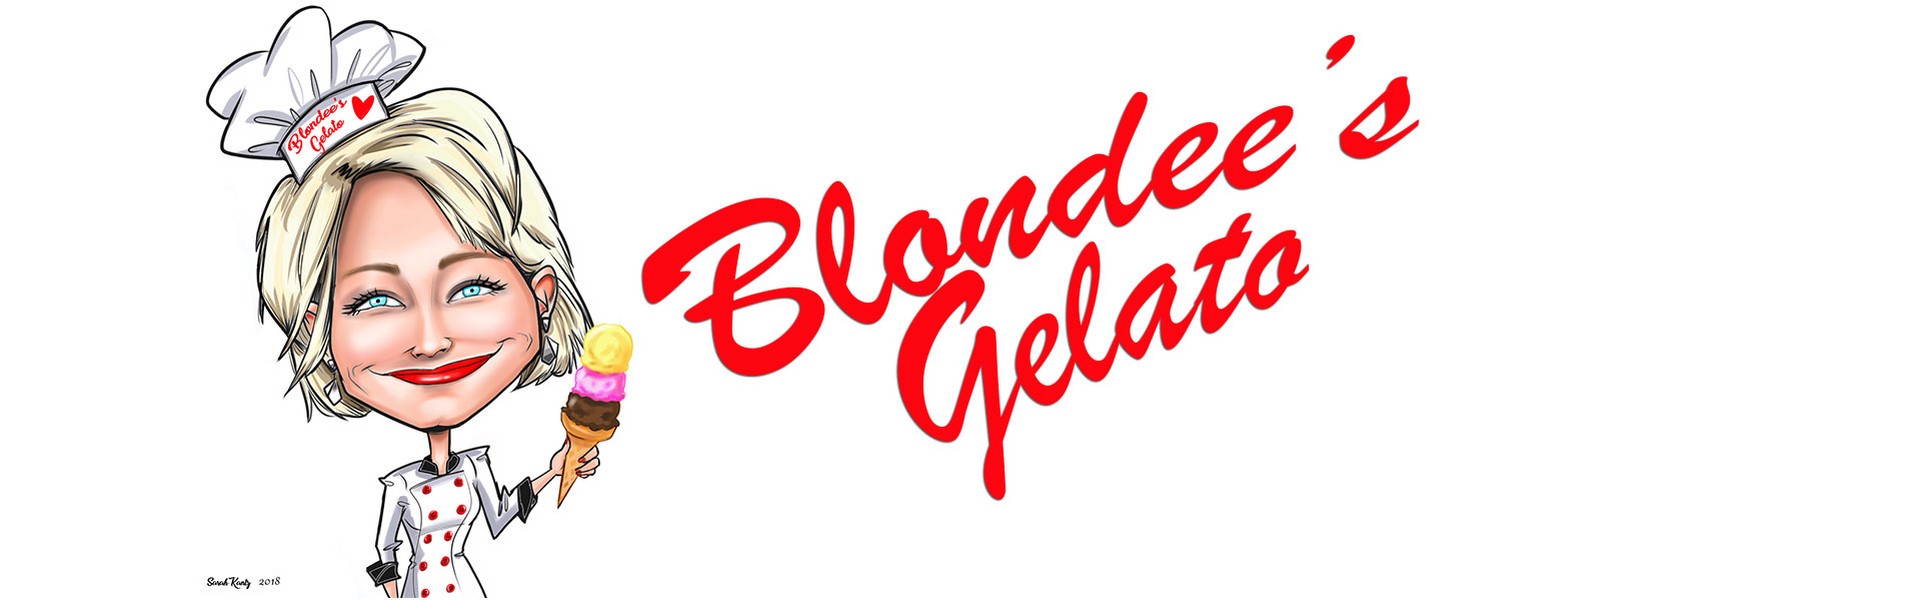 blondees-gelato-sl1.jpg